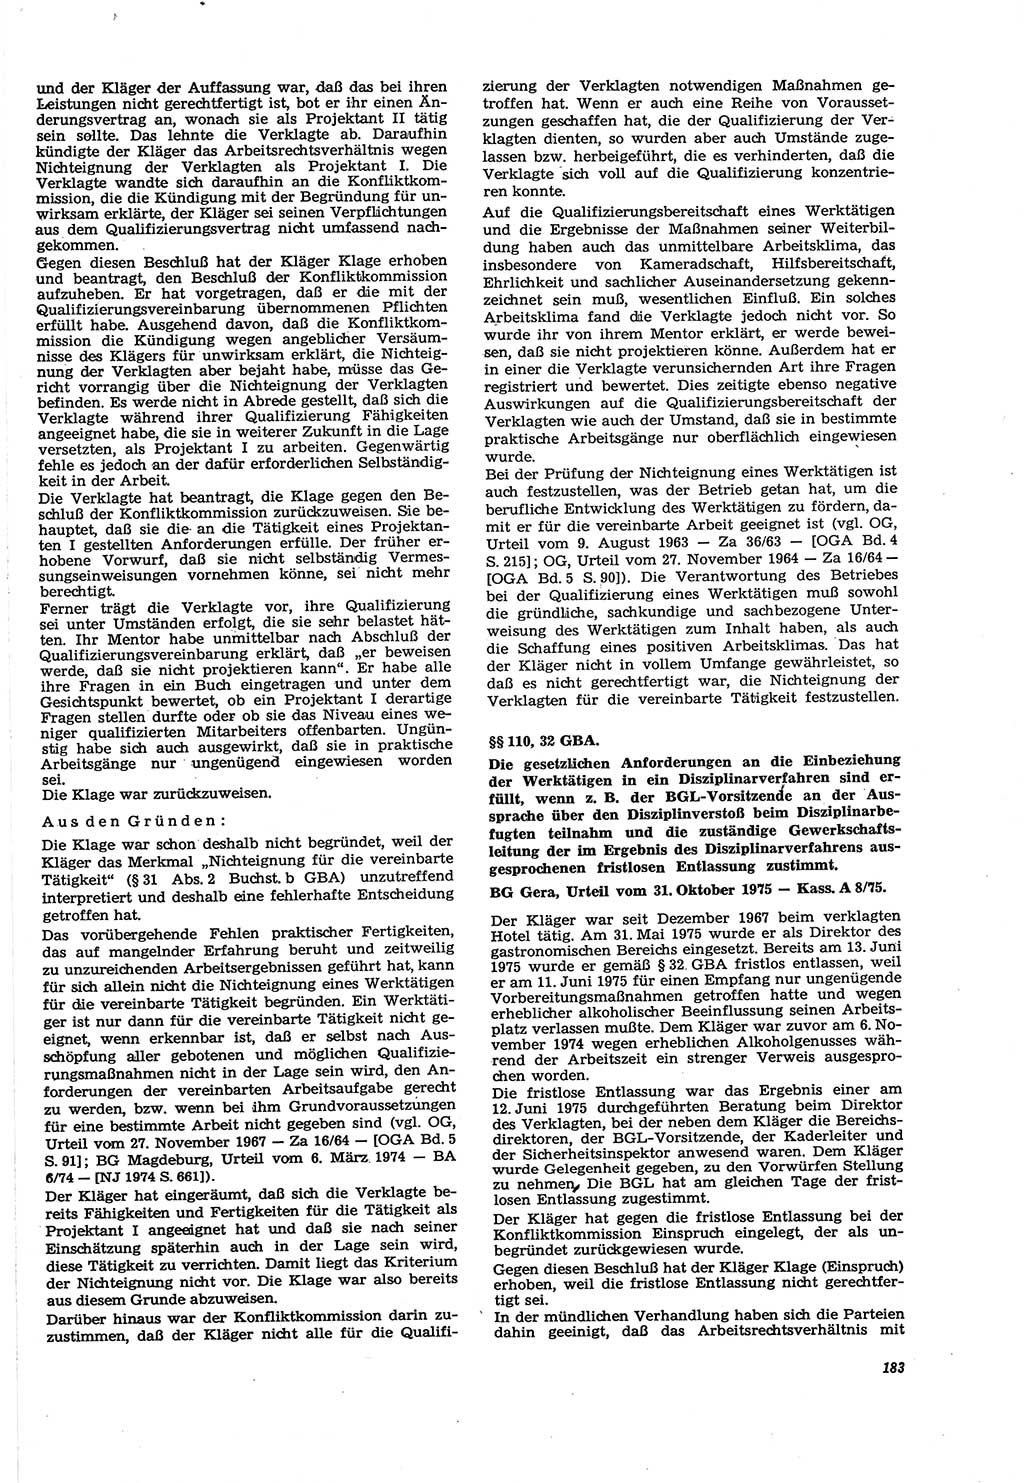 Neue Justiz (NJ), Zeitschrift für Recht und Rechtswissenschaft [Deutsche Demokratische Republik (DDR)], 30. Jahrgang 1976, Seite 183 (NJ DDR 1976, S. 183)